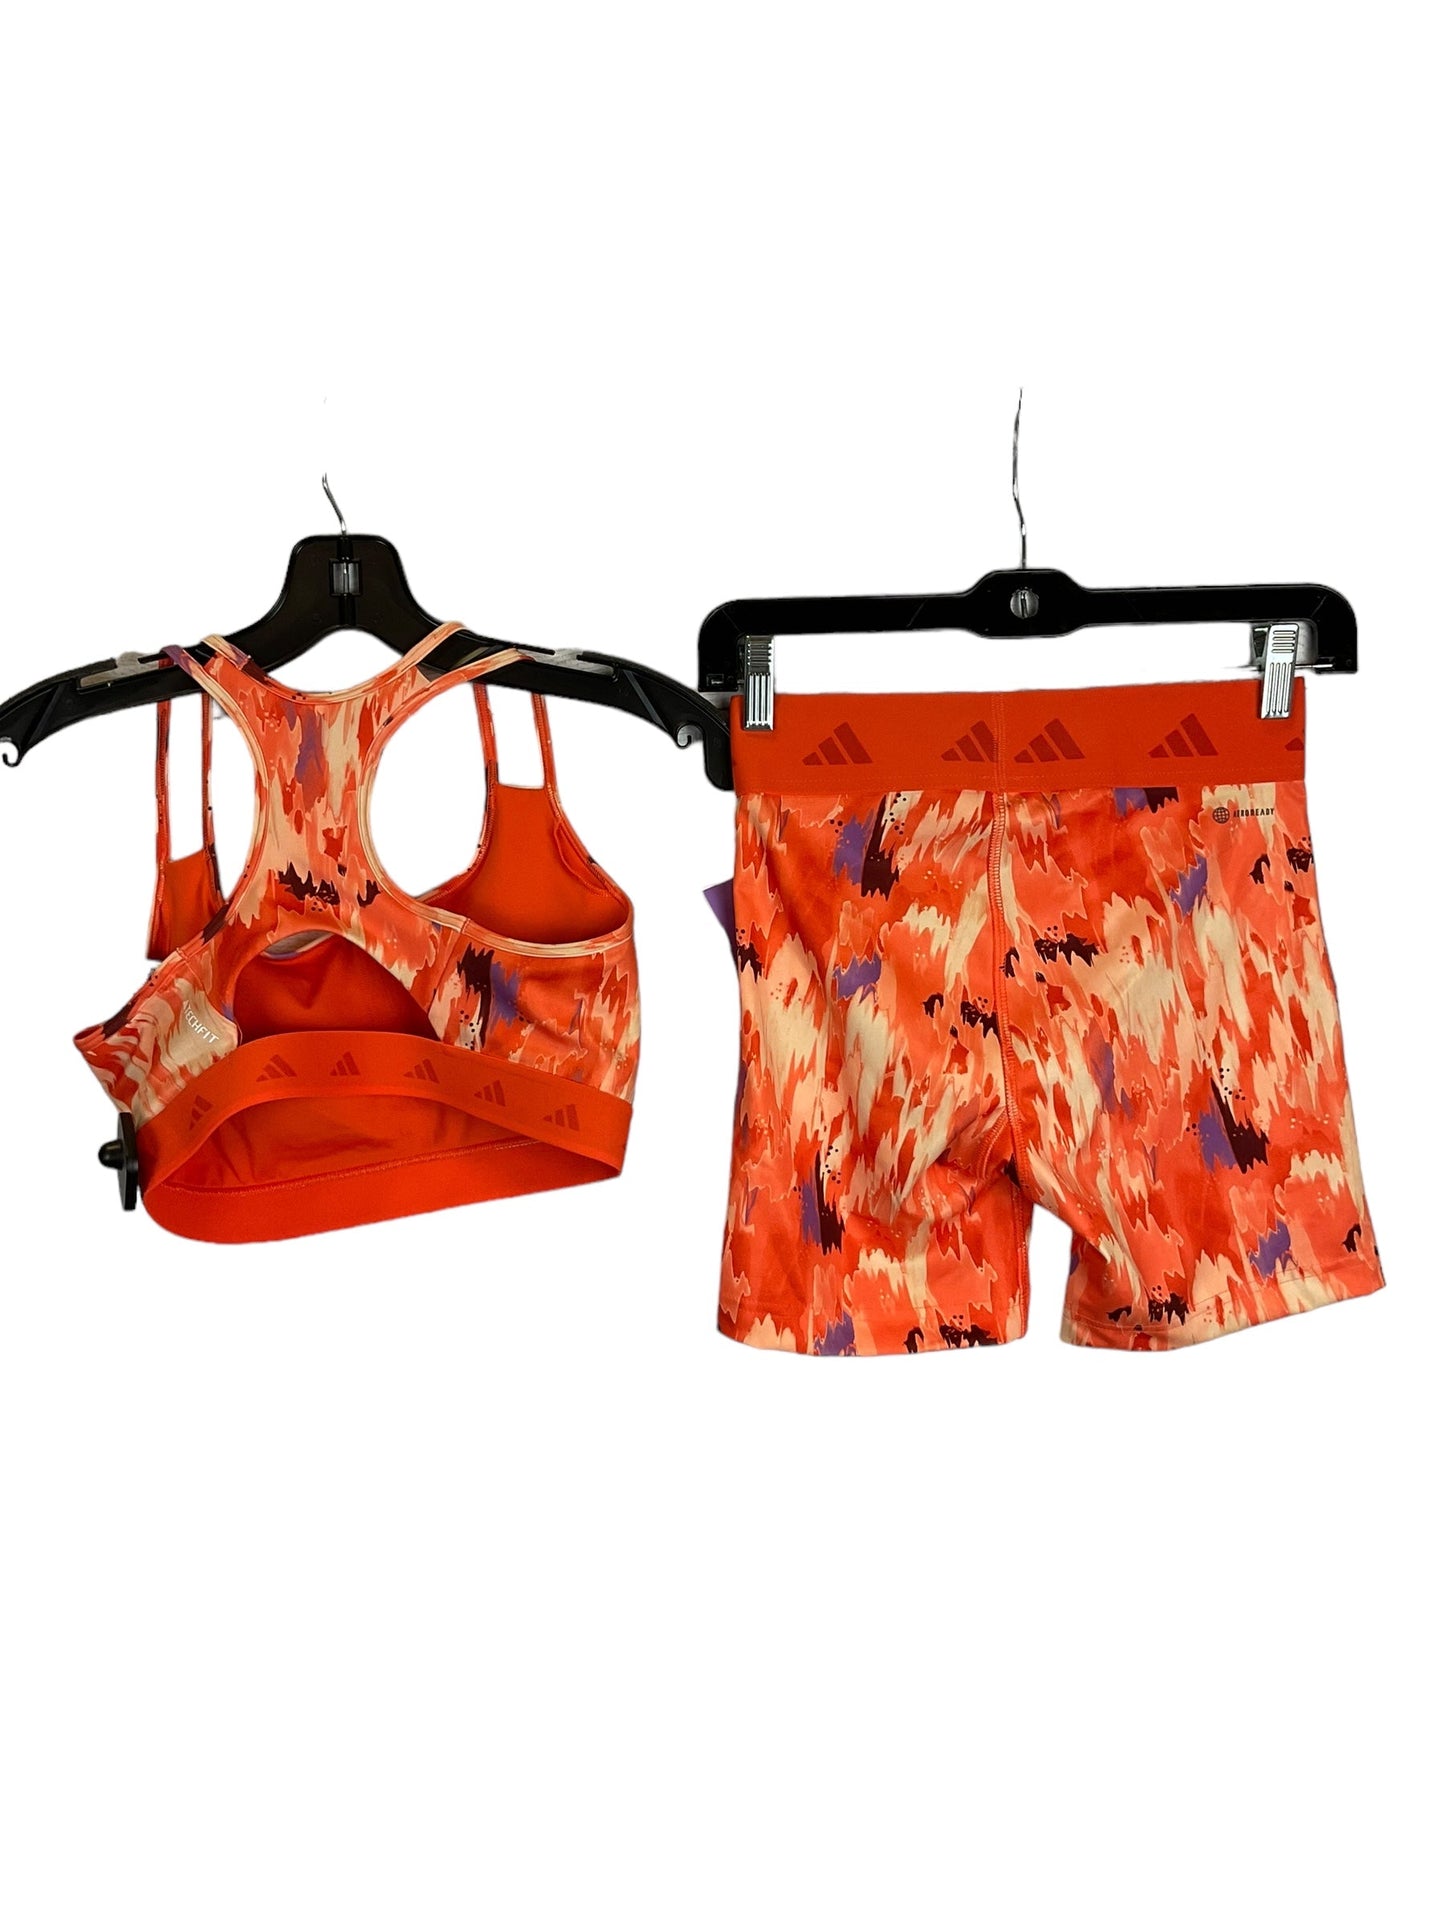 Orange Athletic Shorts 2 Pc Adidas, Size S